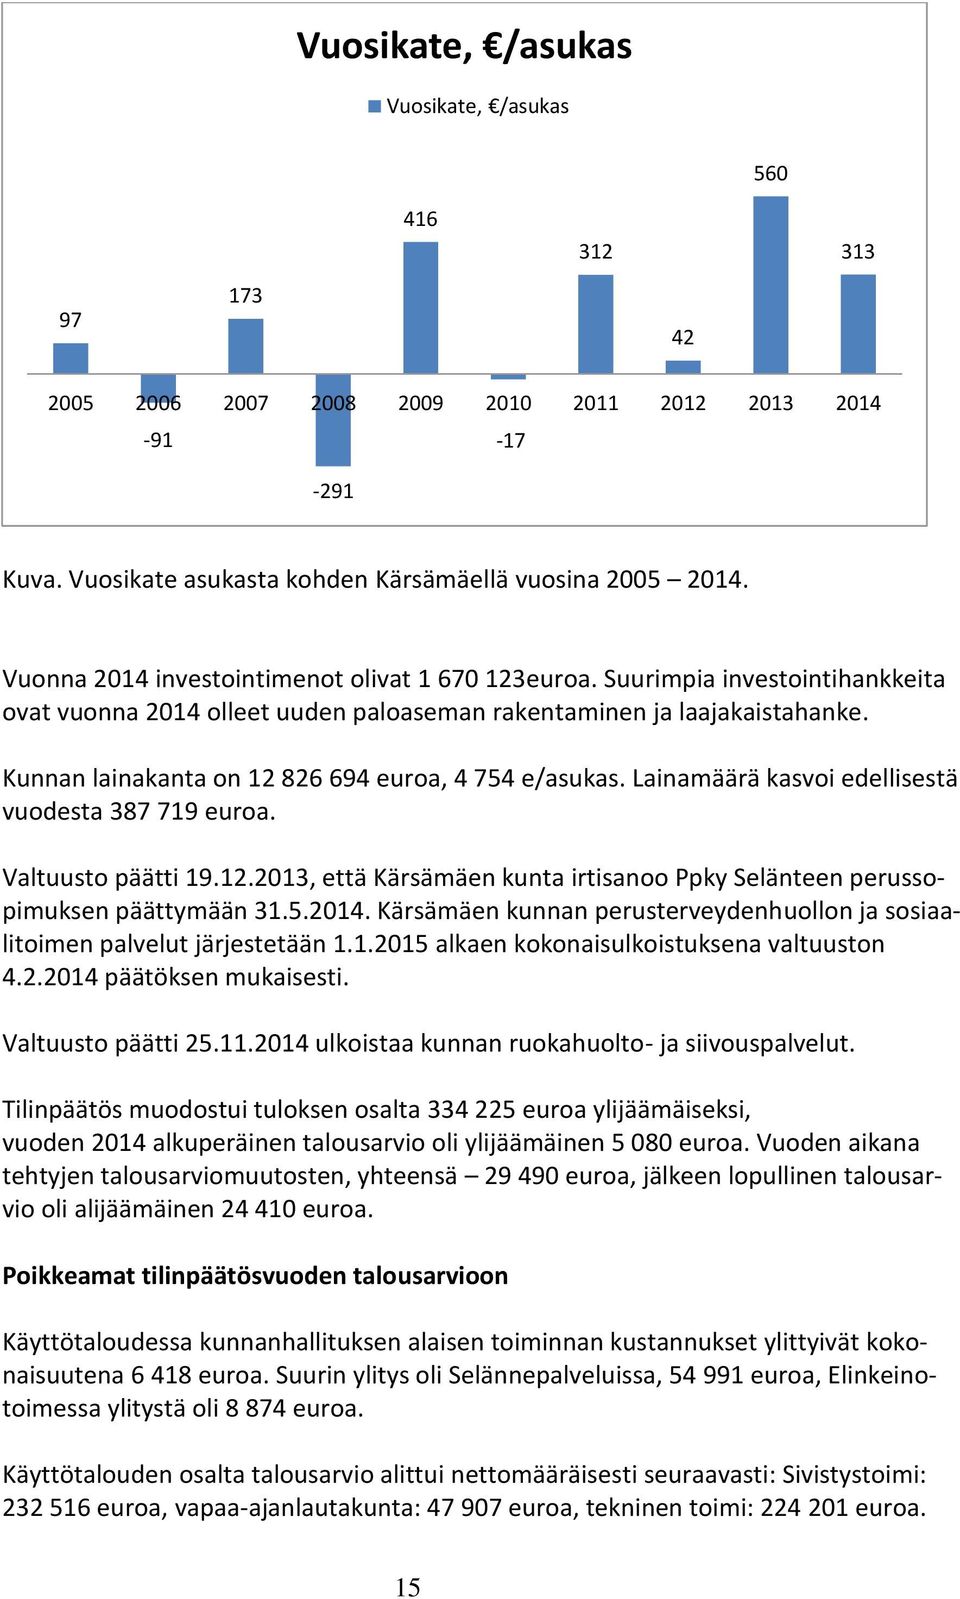 Kunnan lainakanta on 12 826 694 euroa, 4 754 e/asukas. Lainamäärä kasvoi edellisestä vuodesta 387 719 euroa. Valtuusto päätti 19.12.2013, että Kärsämäen kunta irtisanoo Ppky Selänteen perussopimuksen päättymään 31.